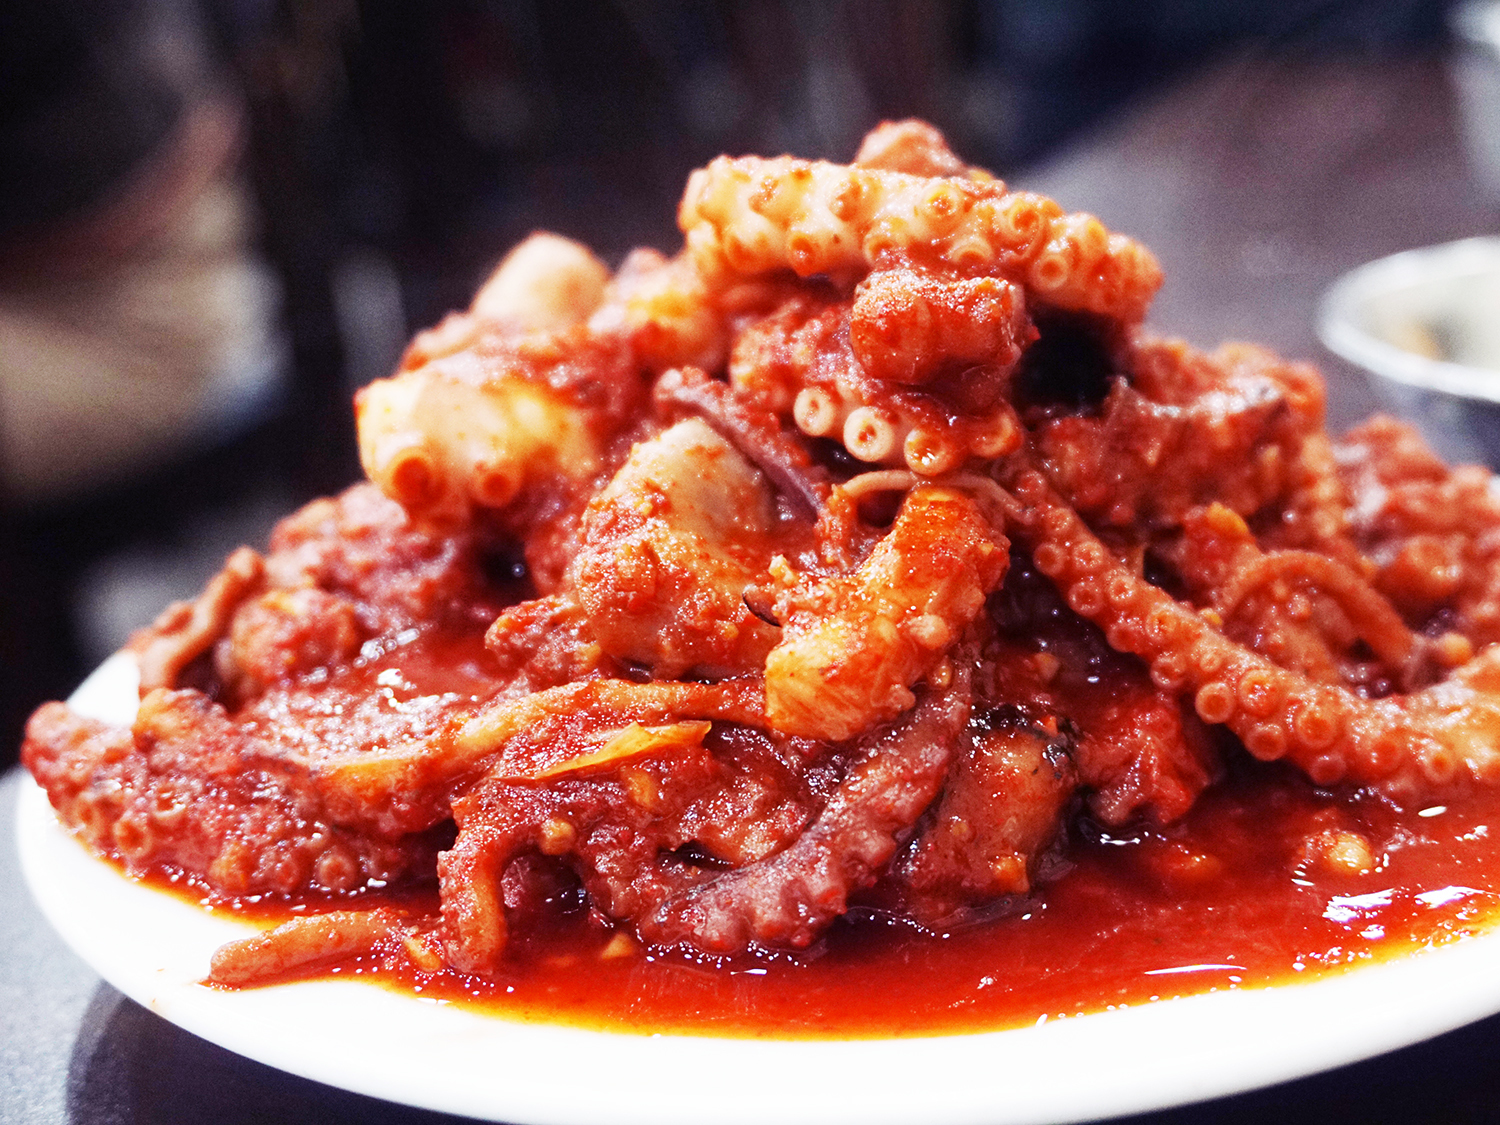 đồ ăn cay Hàn Quốc nổi tiếng trên bàn nhậu - bạch tuộc xào cay